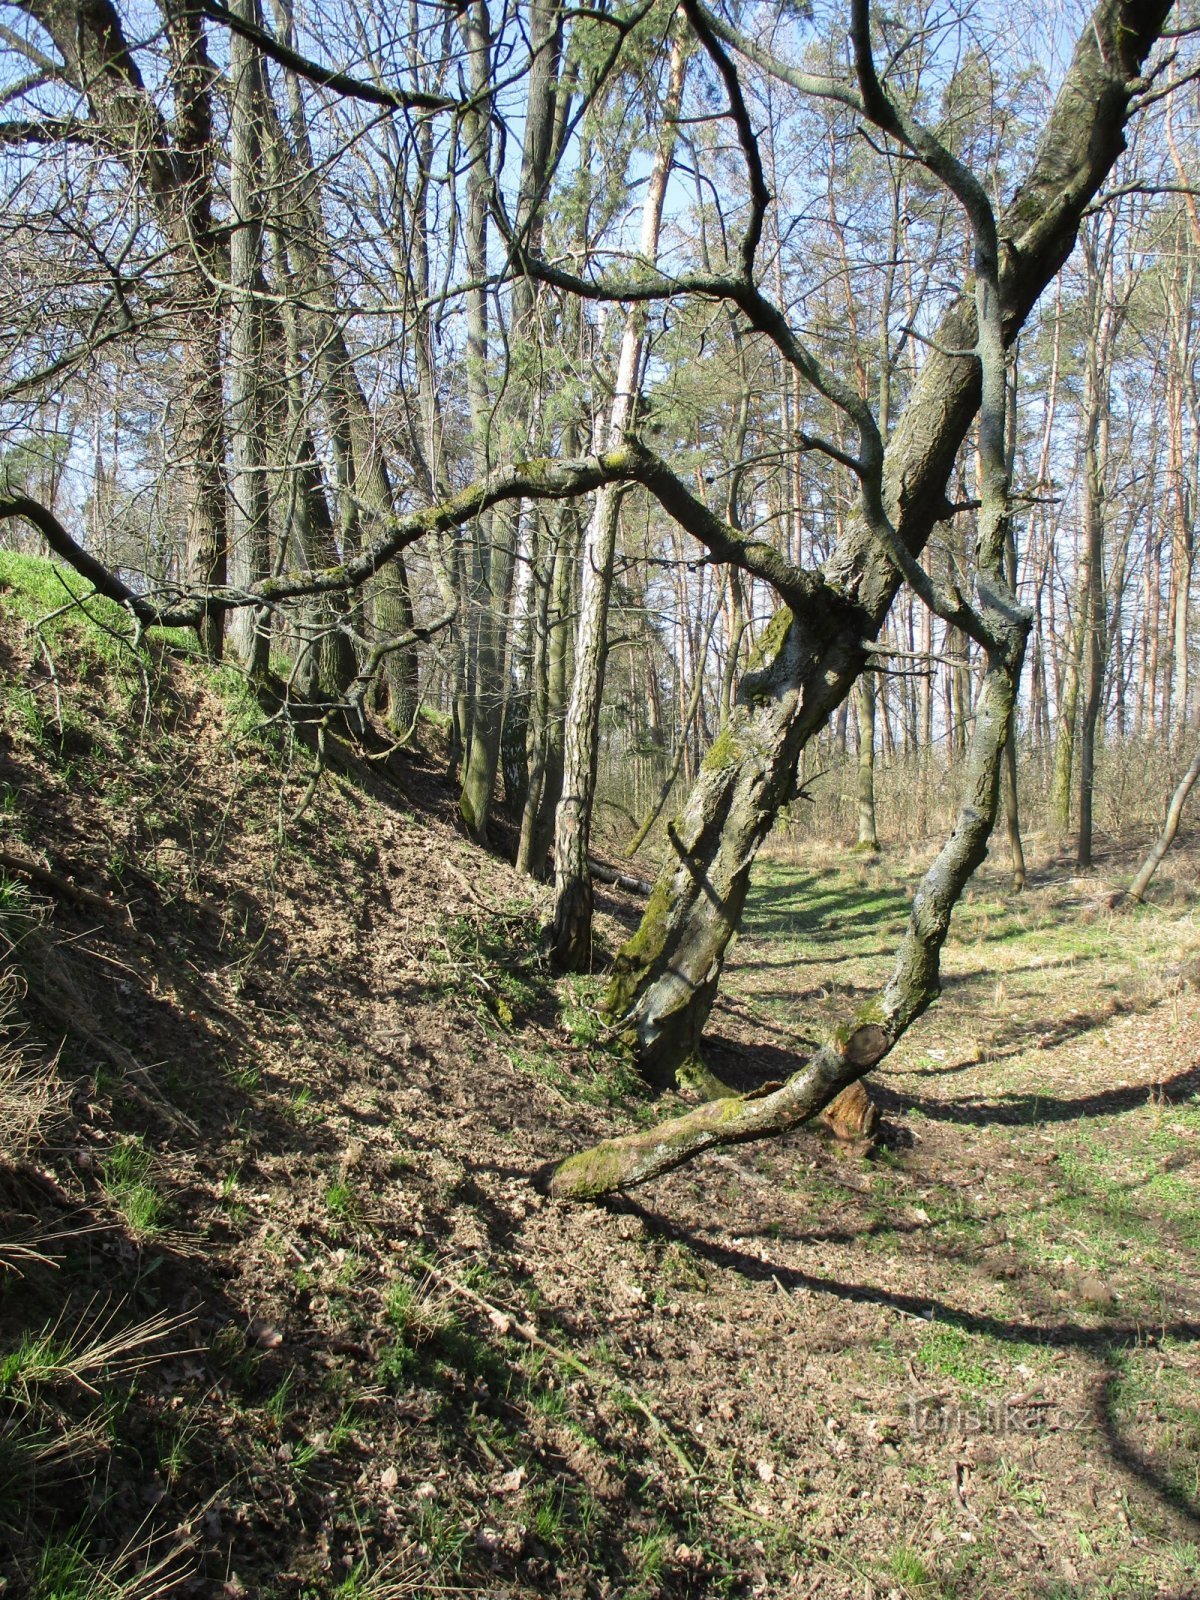 Parte boscosa de los huertos originales (Hořiněves, 2.4.2020 de abril de XNUMX)